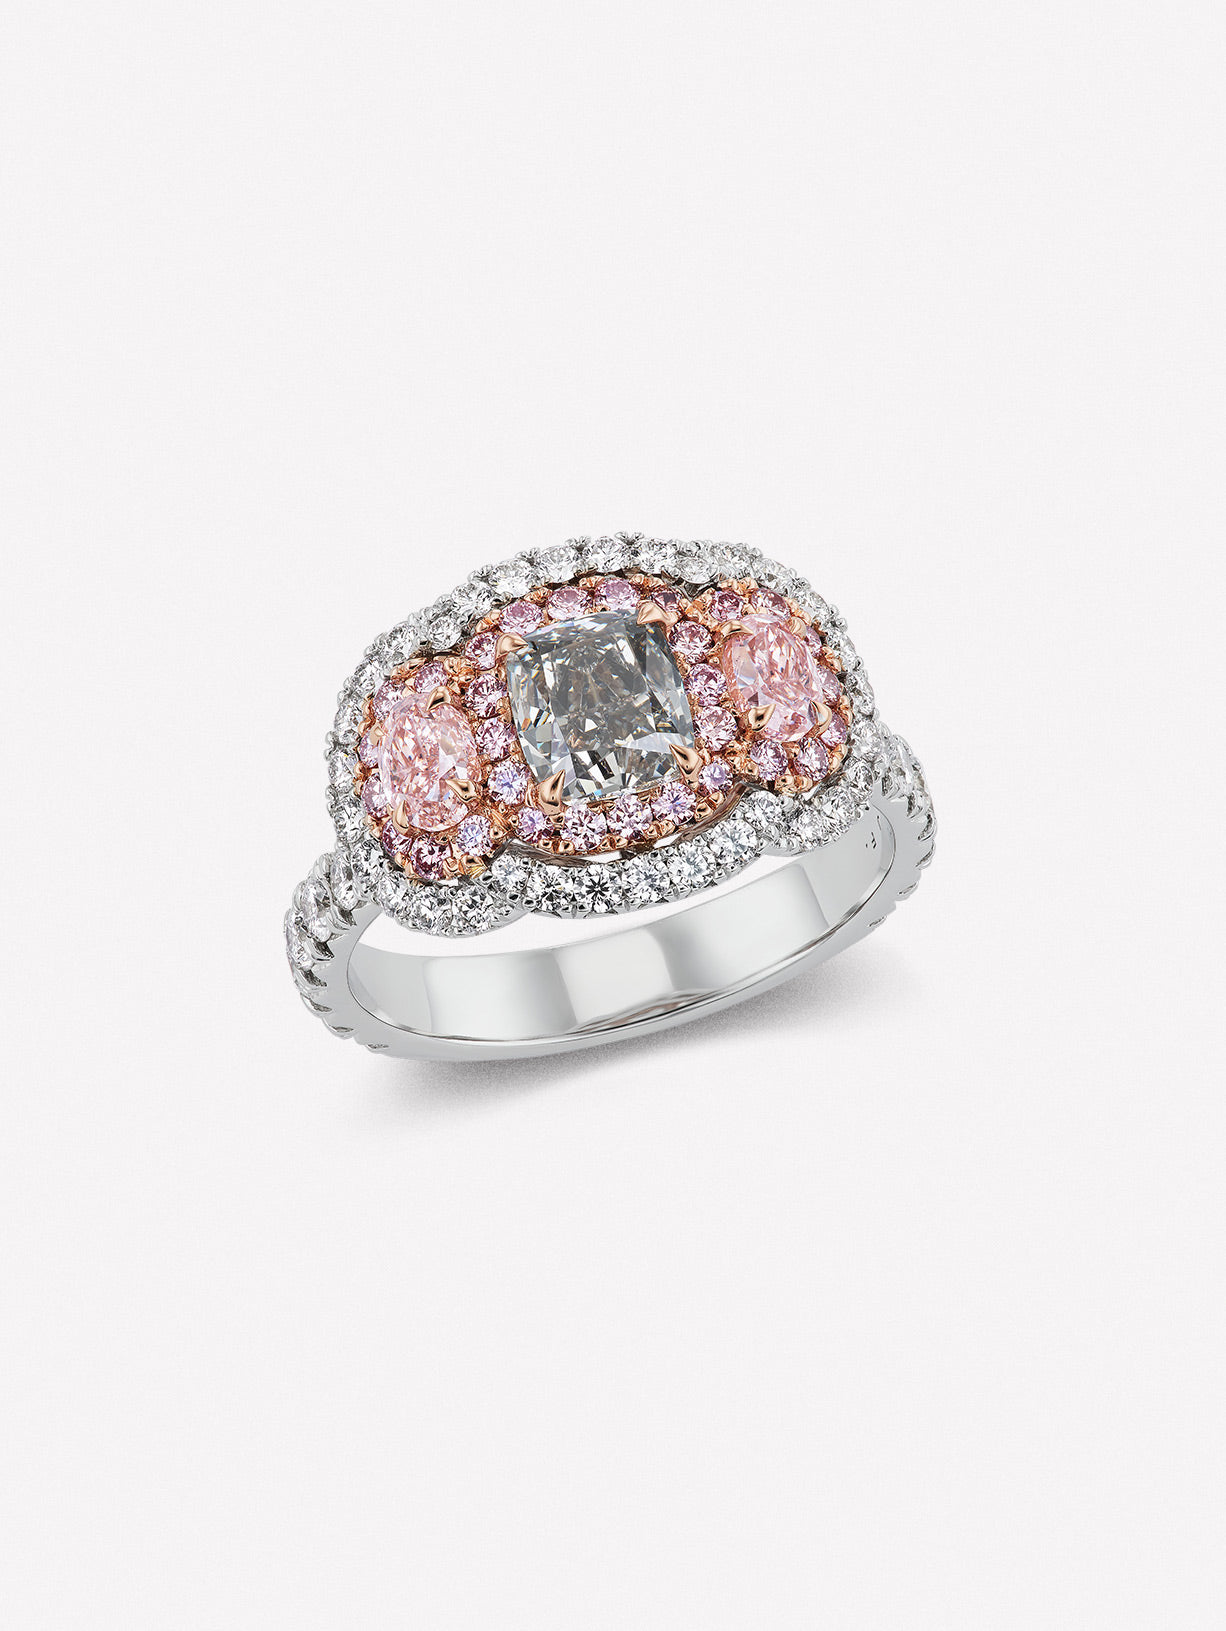 Argyle Pink™ Diamond and Gray Diamond Three Stone Ring - Pink Diamonds, J FINE - J Fine, Rings - Pink Diamond Jewelry, argyle-pink™-diamond-and-gray-diamond-three-stone-ring-by-j-fine - A